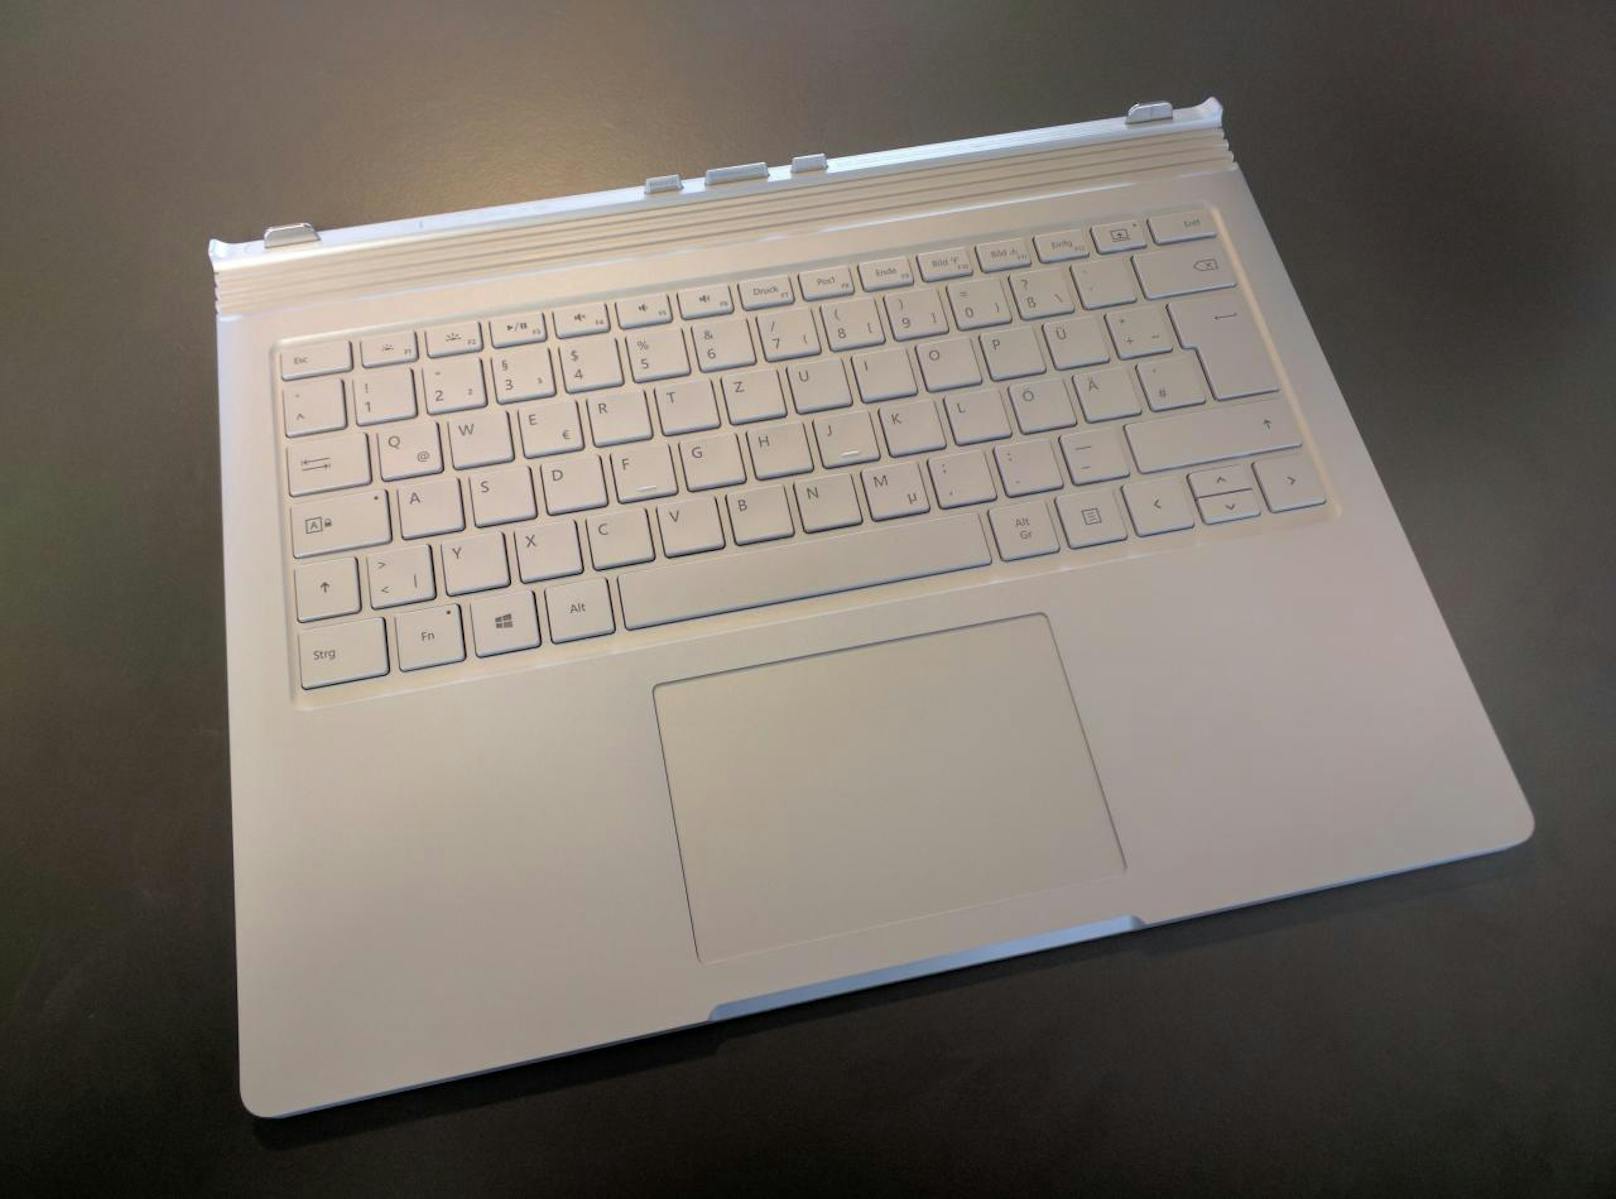 Der zweite Teil, die Performance Base, ist nicht nur eine Tastatur mit Anschlüssen, in die das Tablet gedockt wird. Sie enthält auch einen Grafikchip sowie einen zusätzlichen Akku.